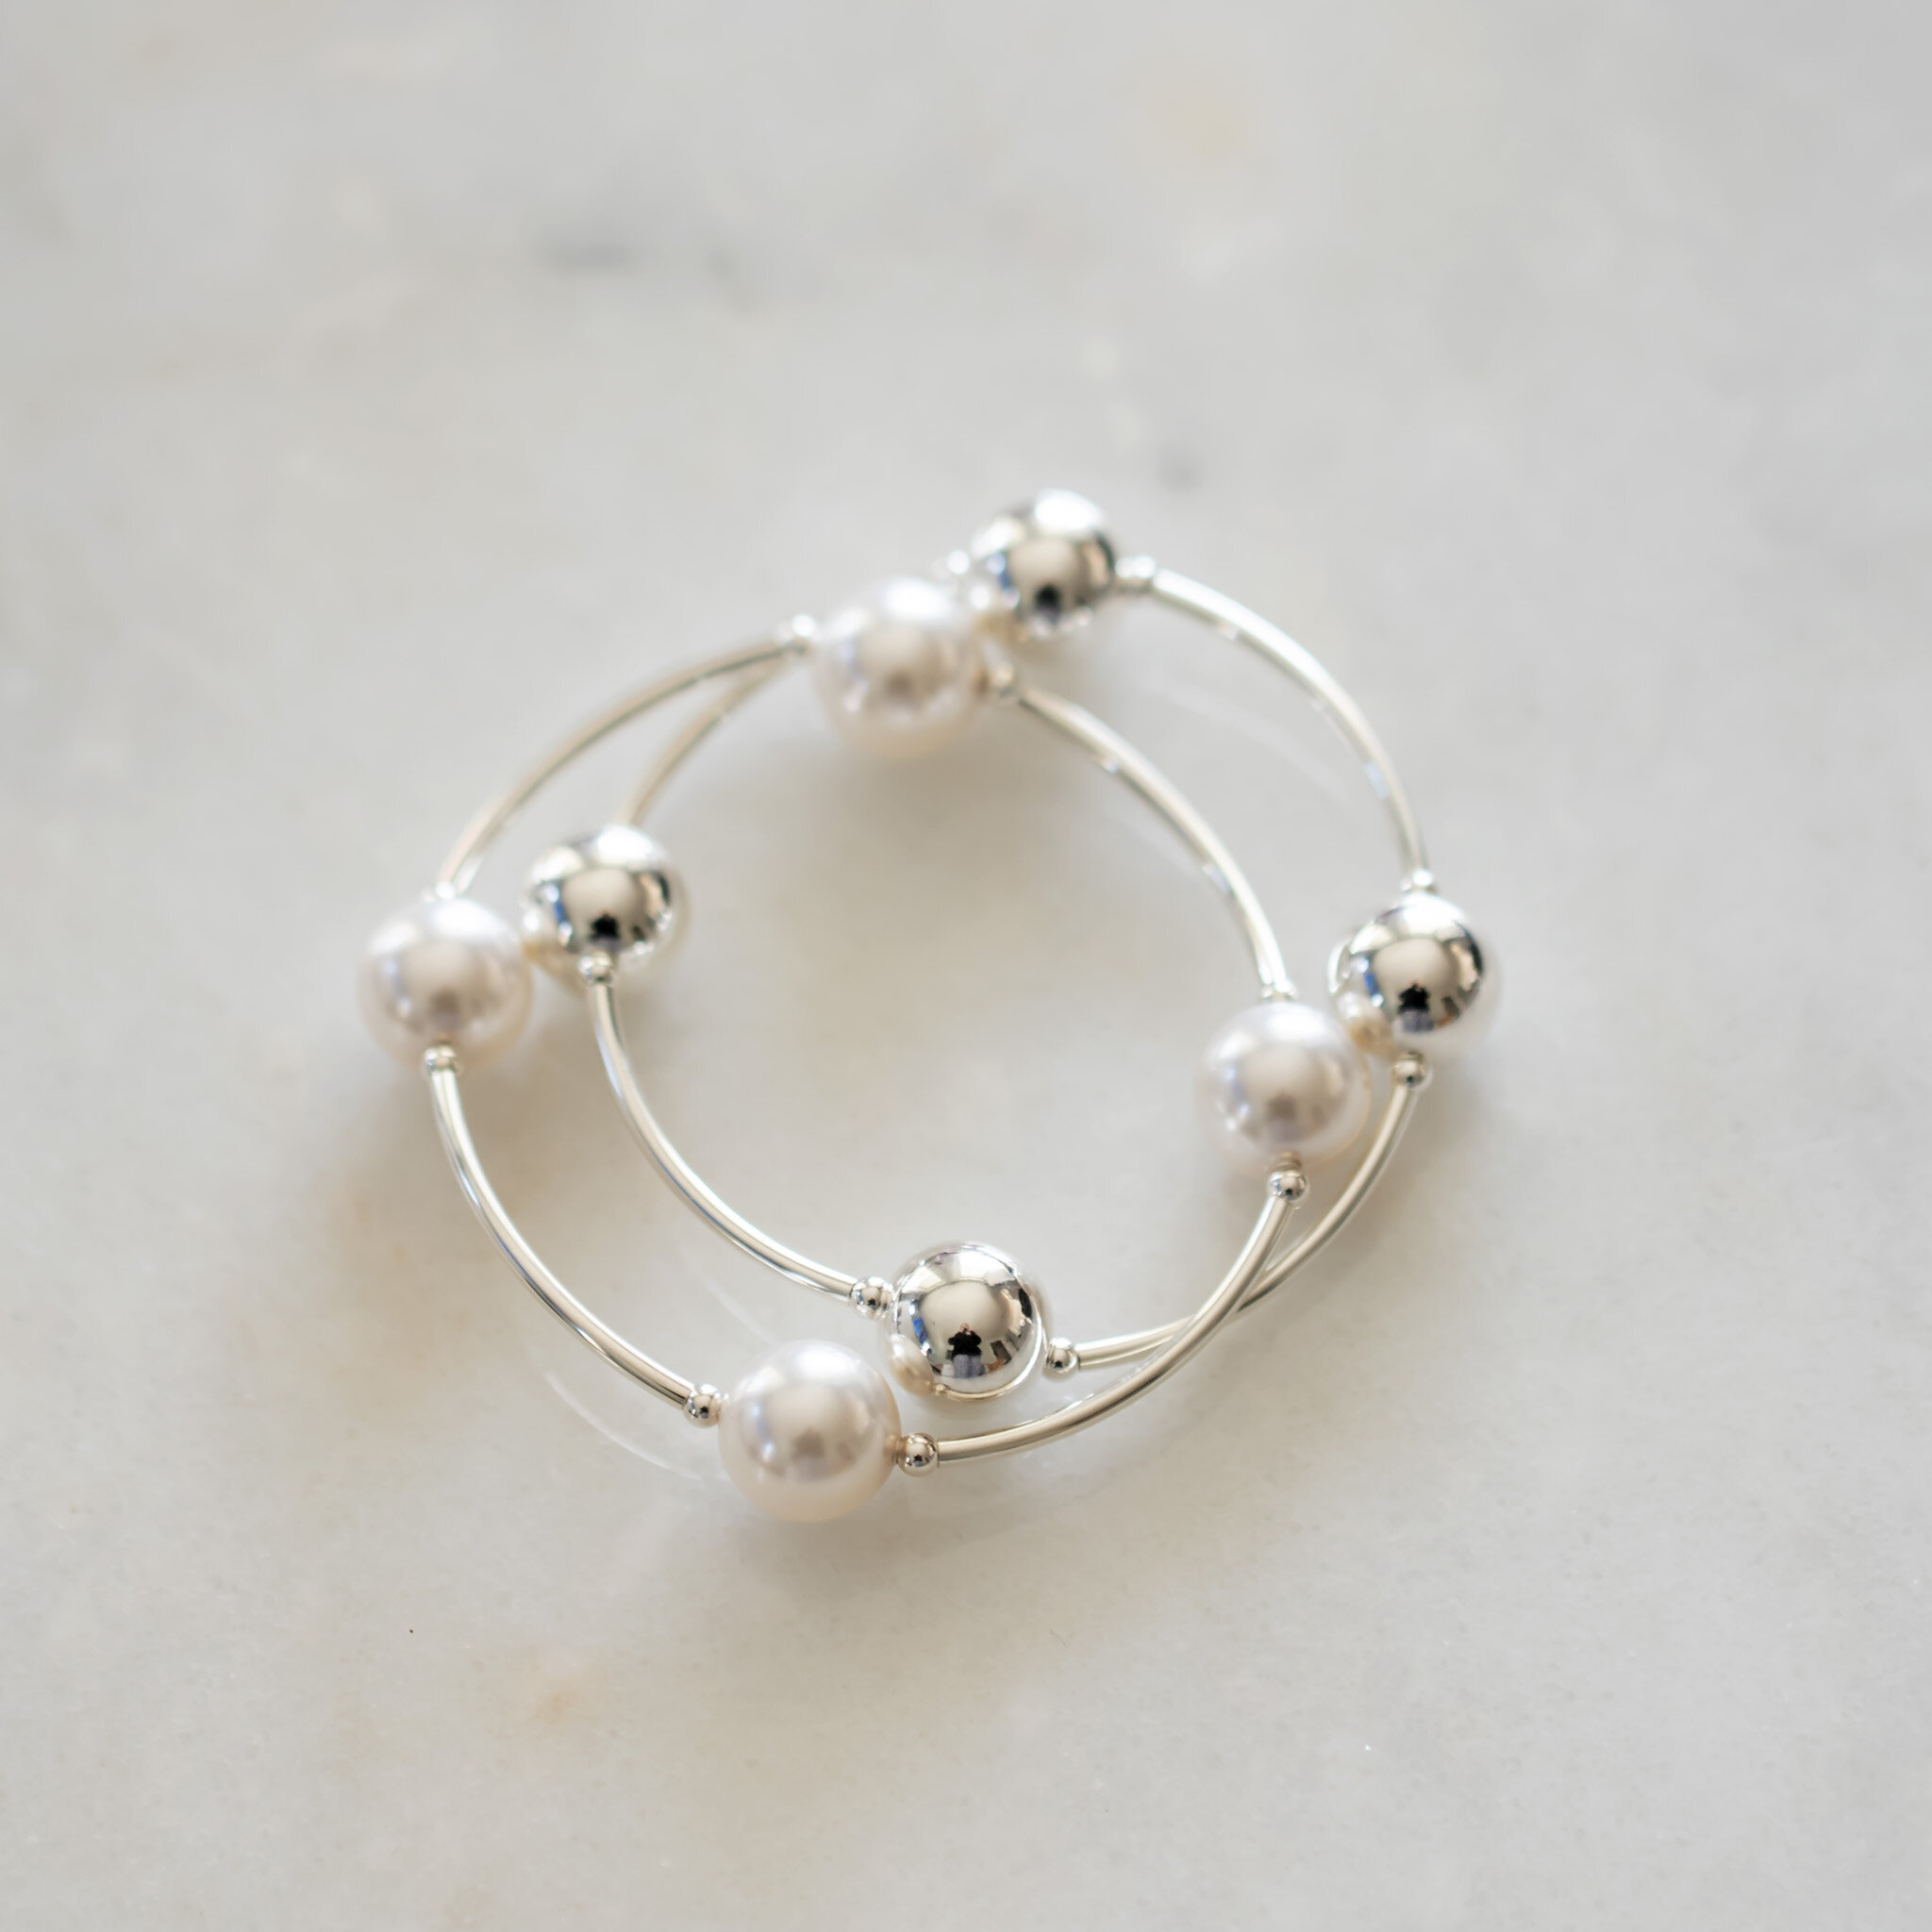 Blessing Bracelets - Malloves Jewelers